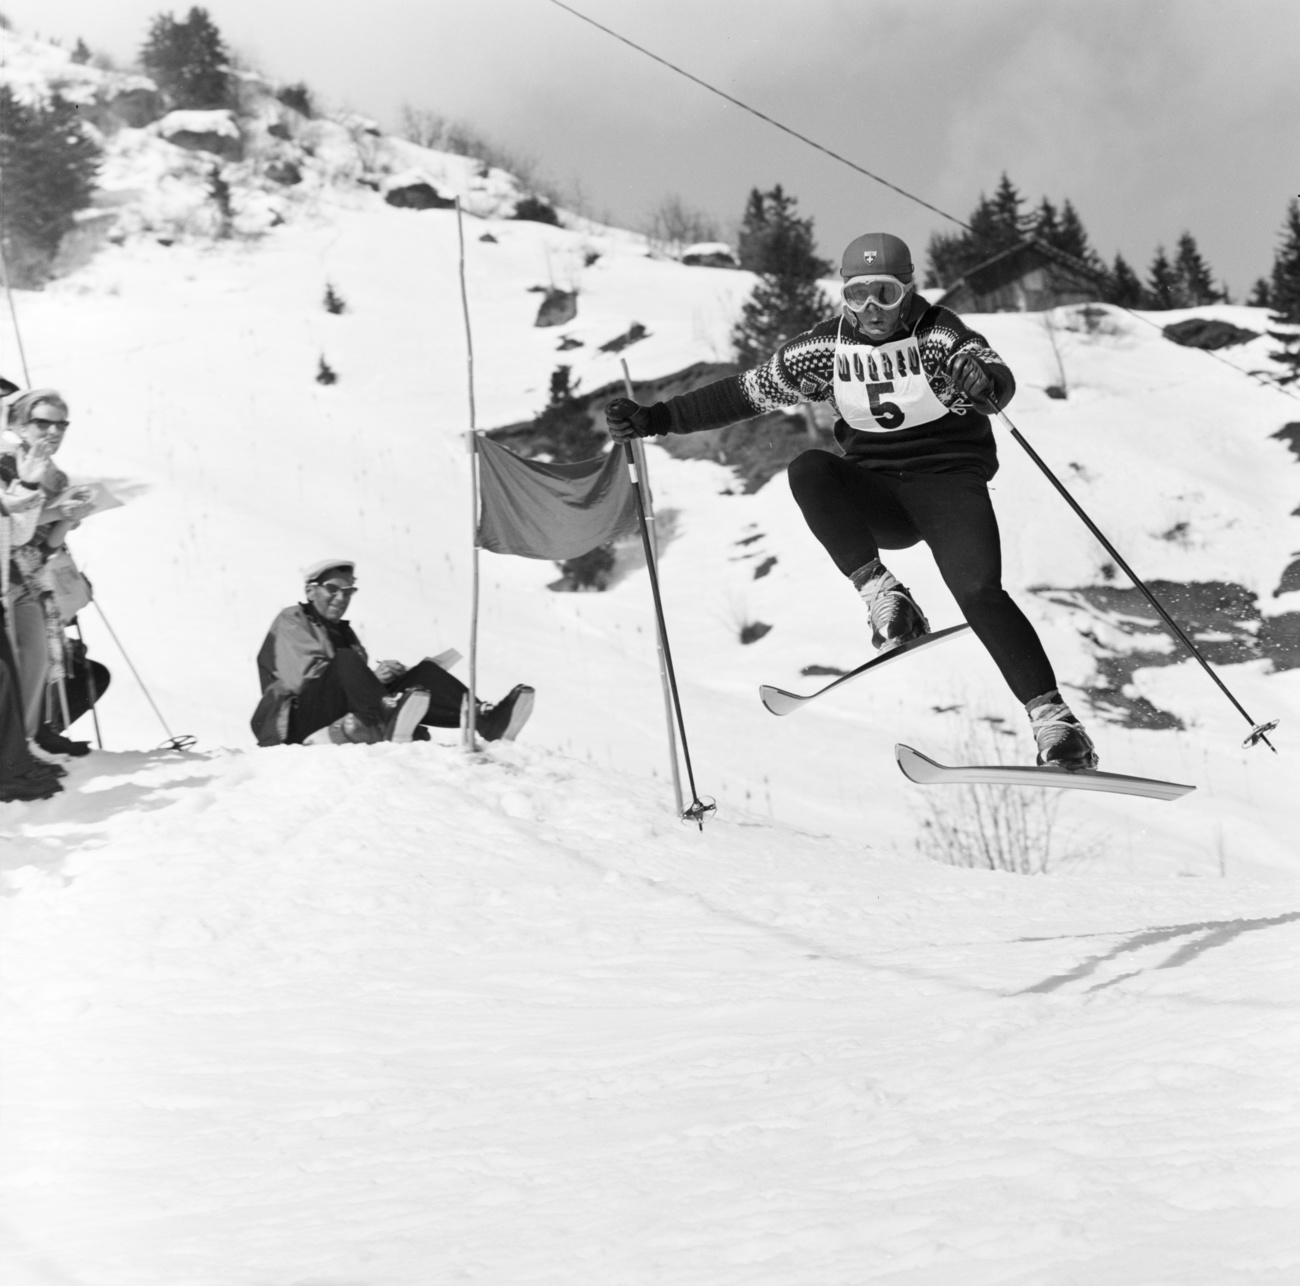 1961年、ミューレンで開催されたカンダハル・スキーレースで活躍するスイス人スキーヤーのウィリー・フォラー